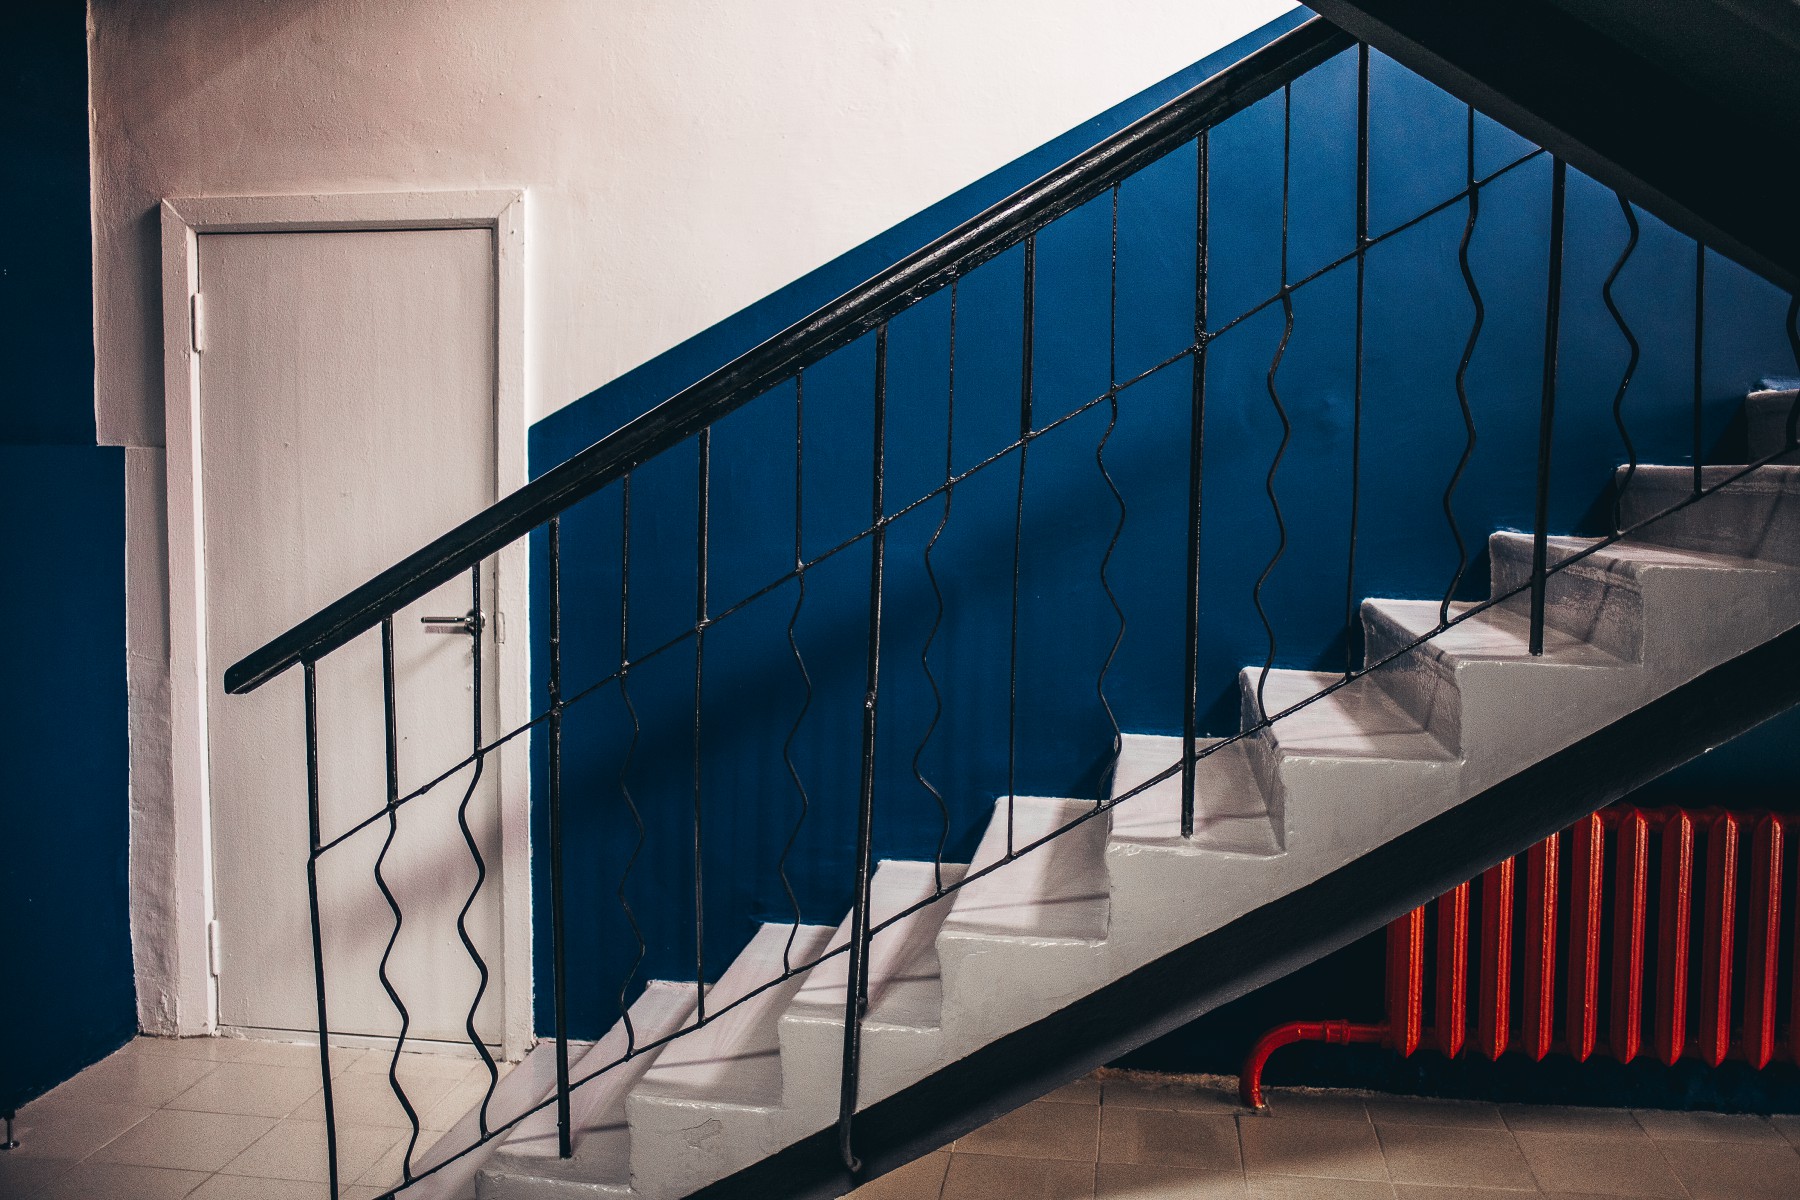 Студия наполнена интересными деталями. и даже обычная батарея под лестницей, покрашенная в красный цвет, может стать локацией для съемки. Фото Анны Мурзиновой